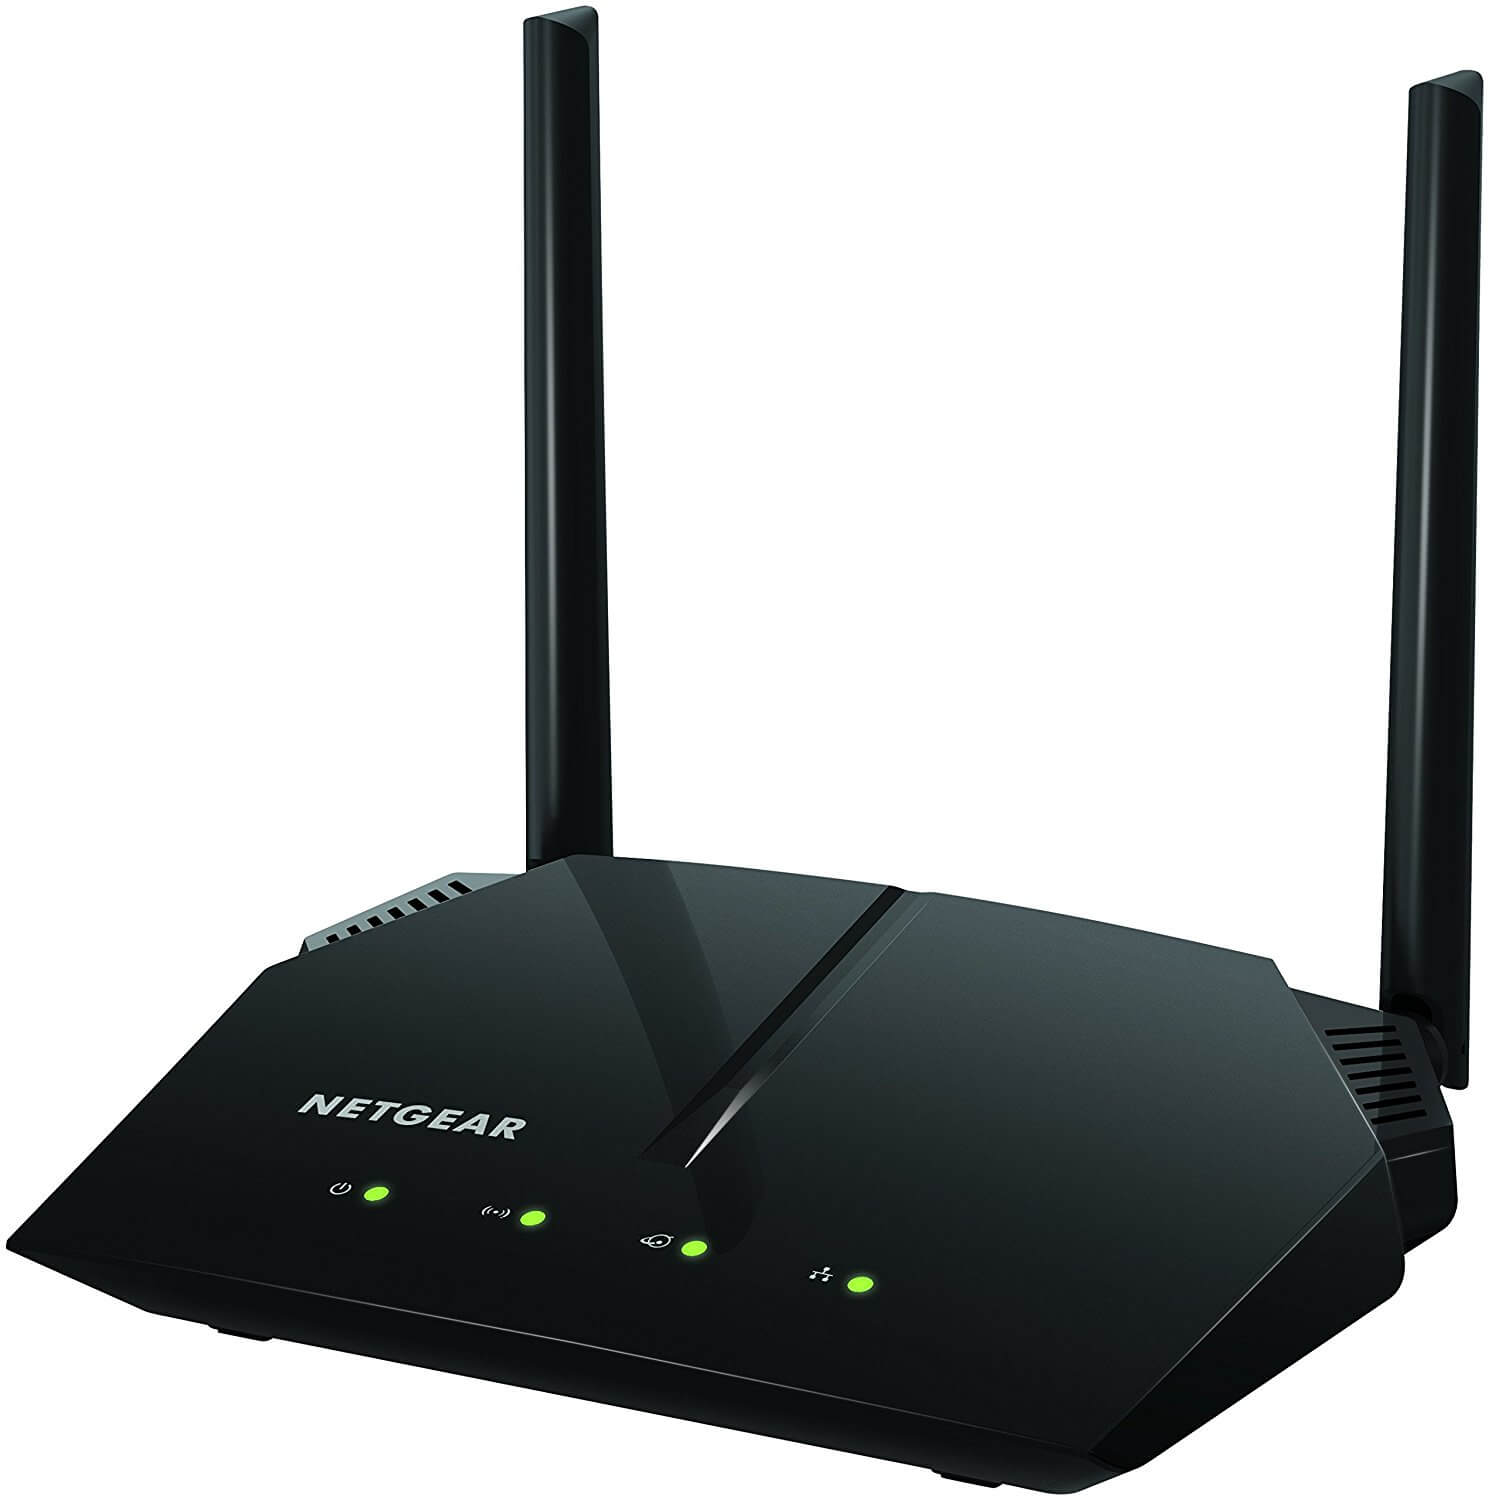 Netgear router on Cyber Monday deals